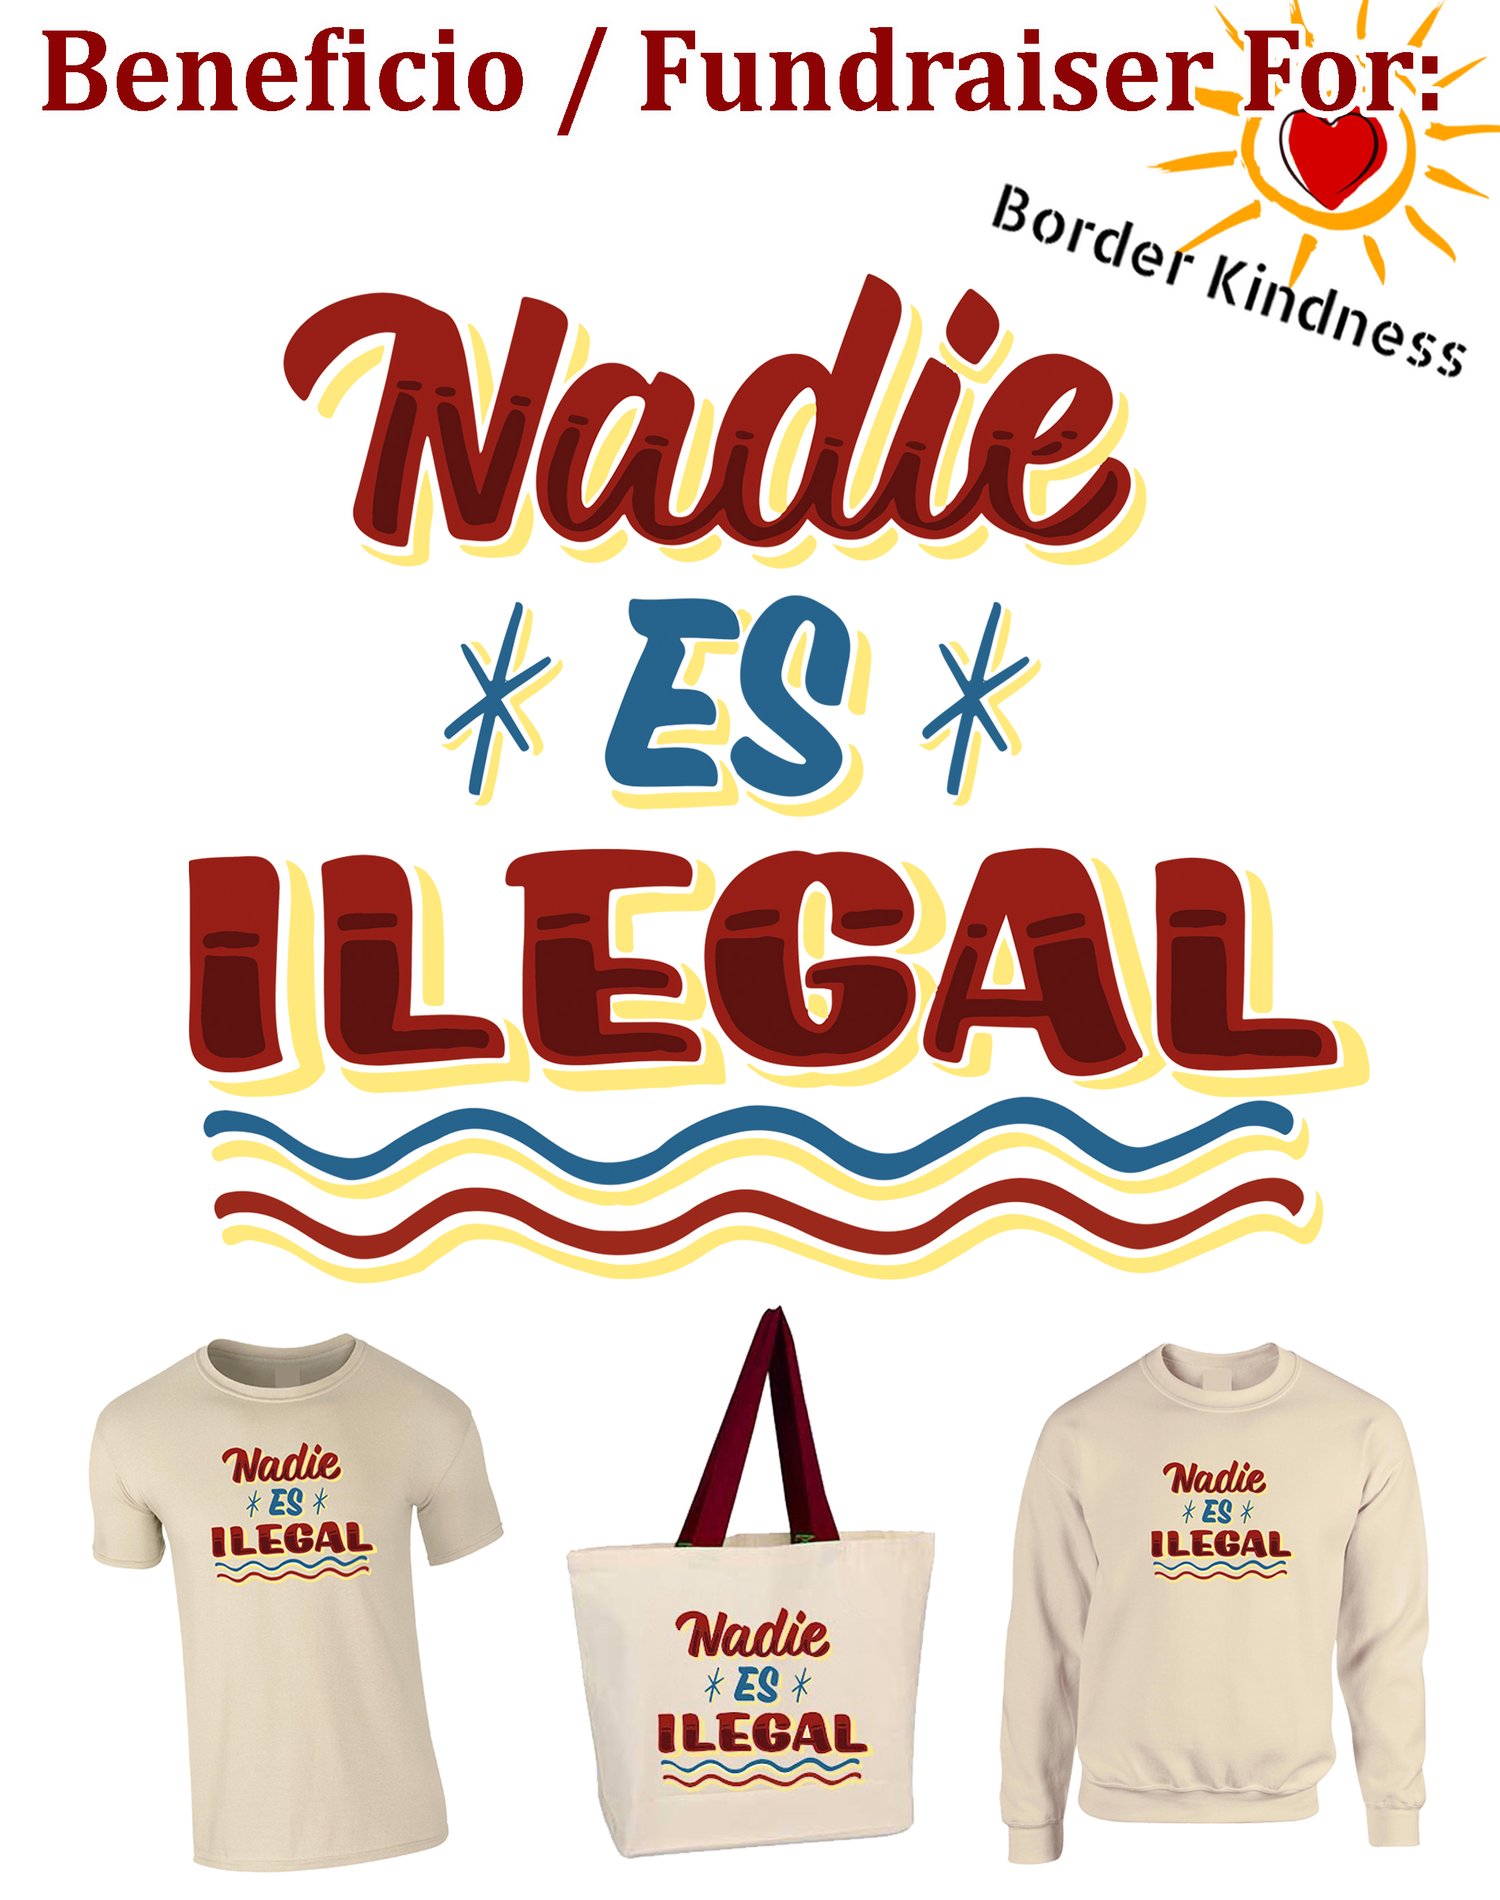 Image of "Nadie Es Ilegal" - Sudadera / Crew Neck - FUNDRAISER